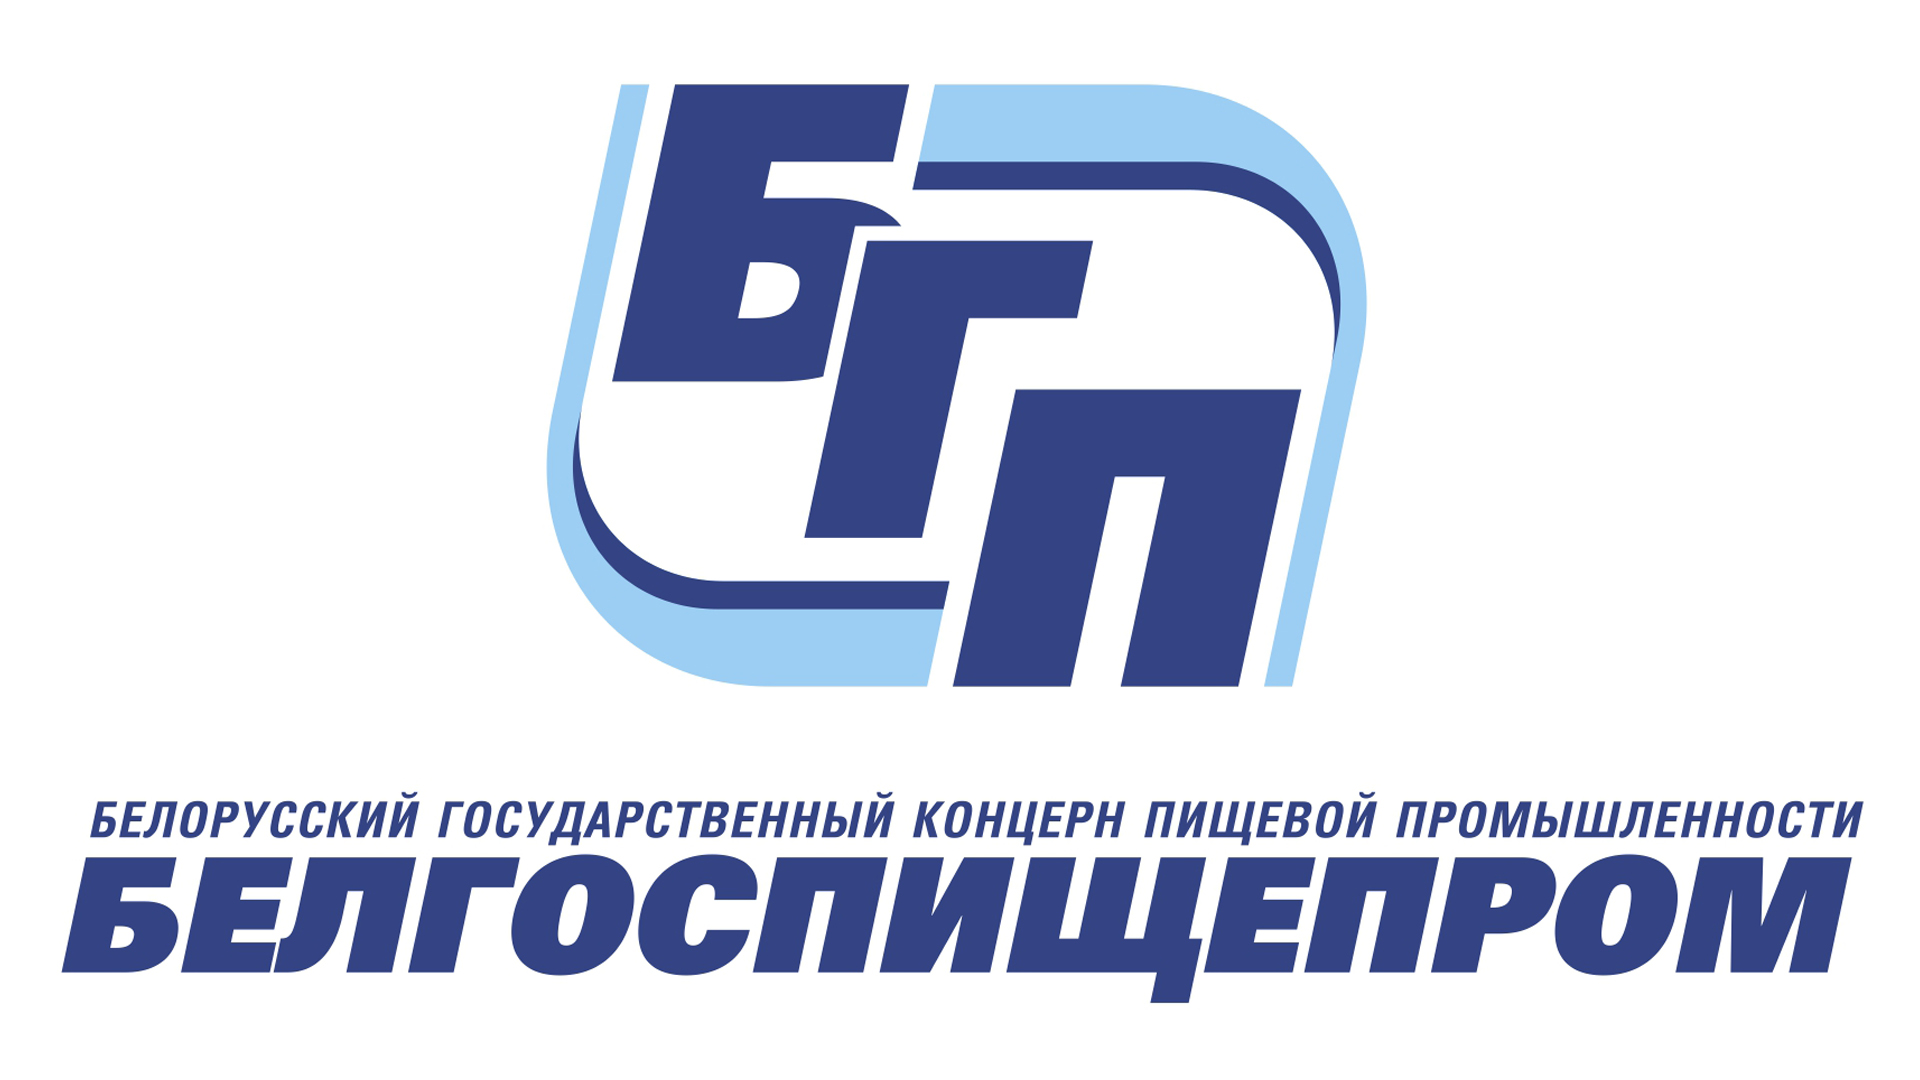 Заседание совета концерна Белгоспищепром